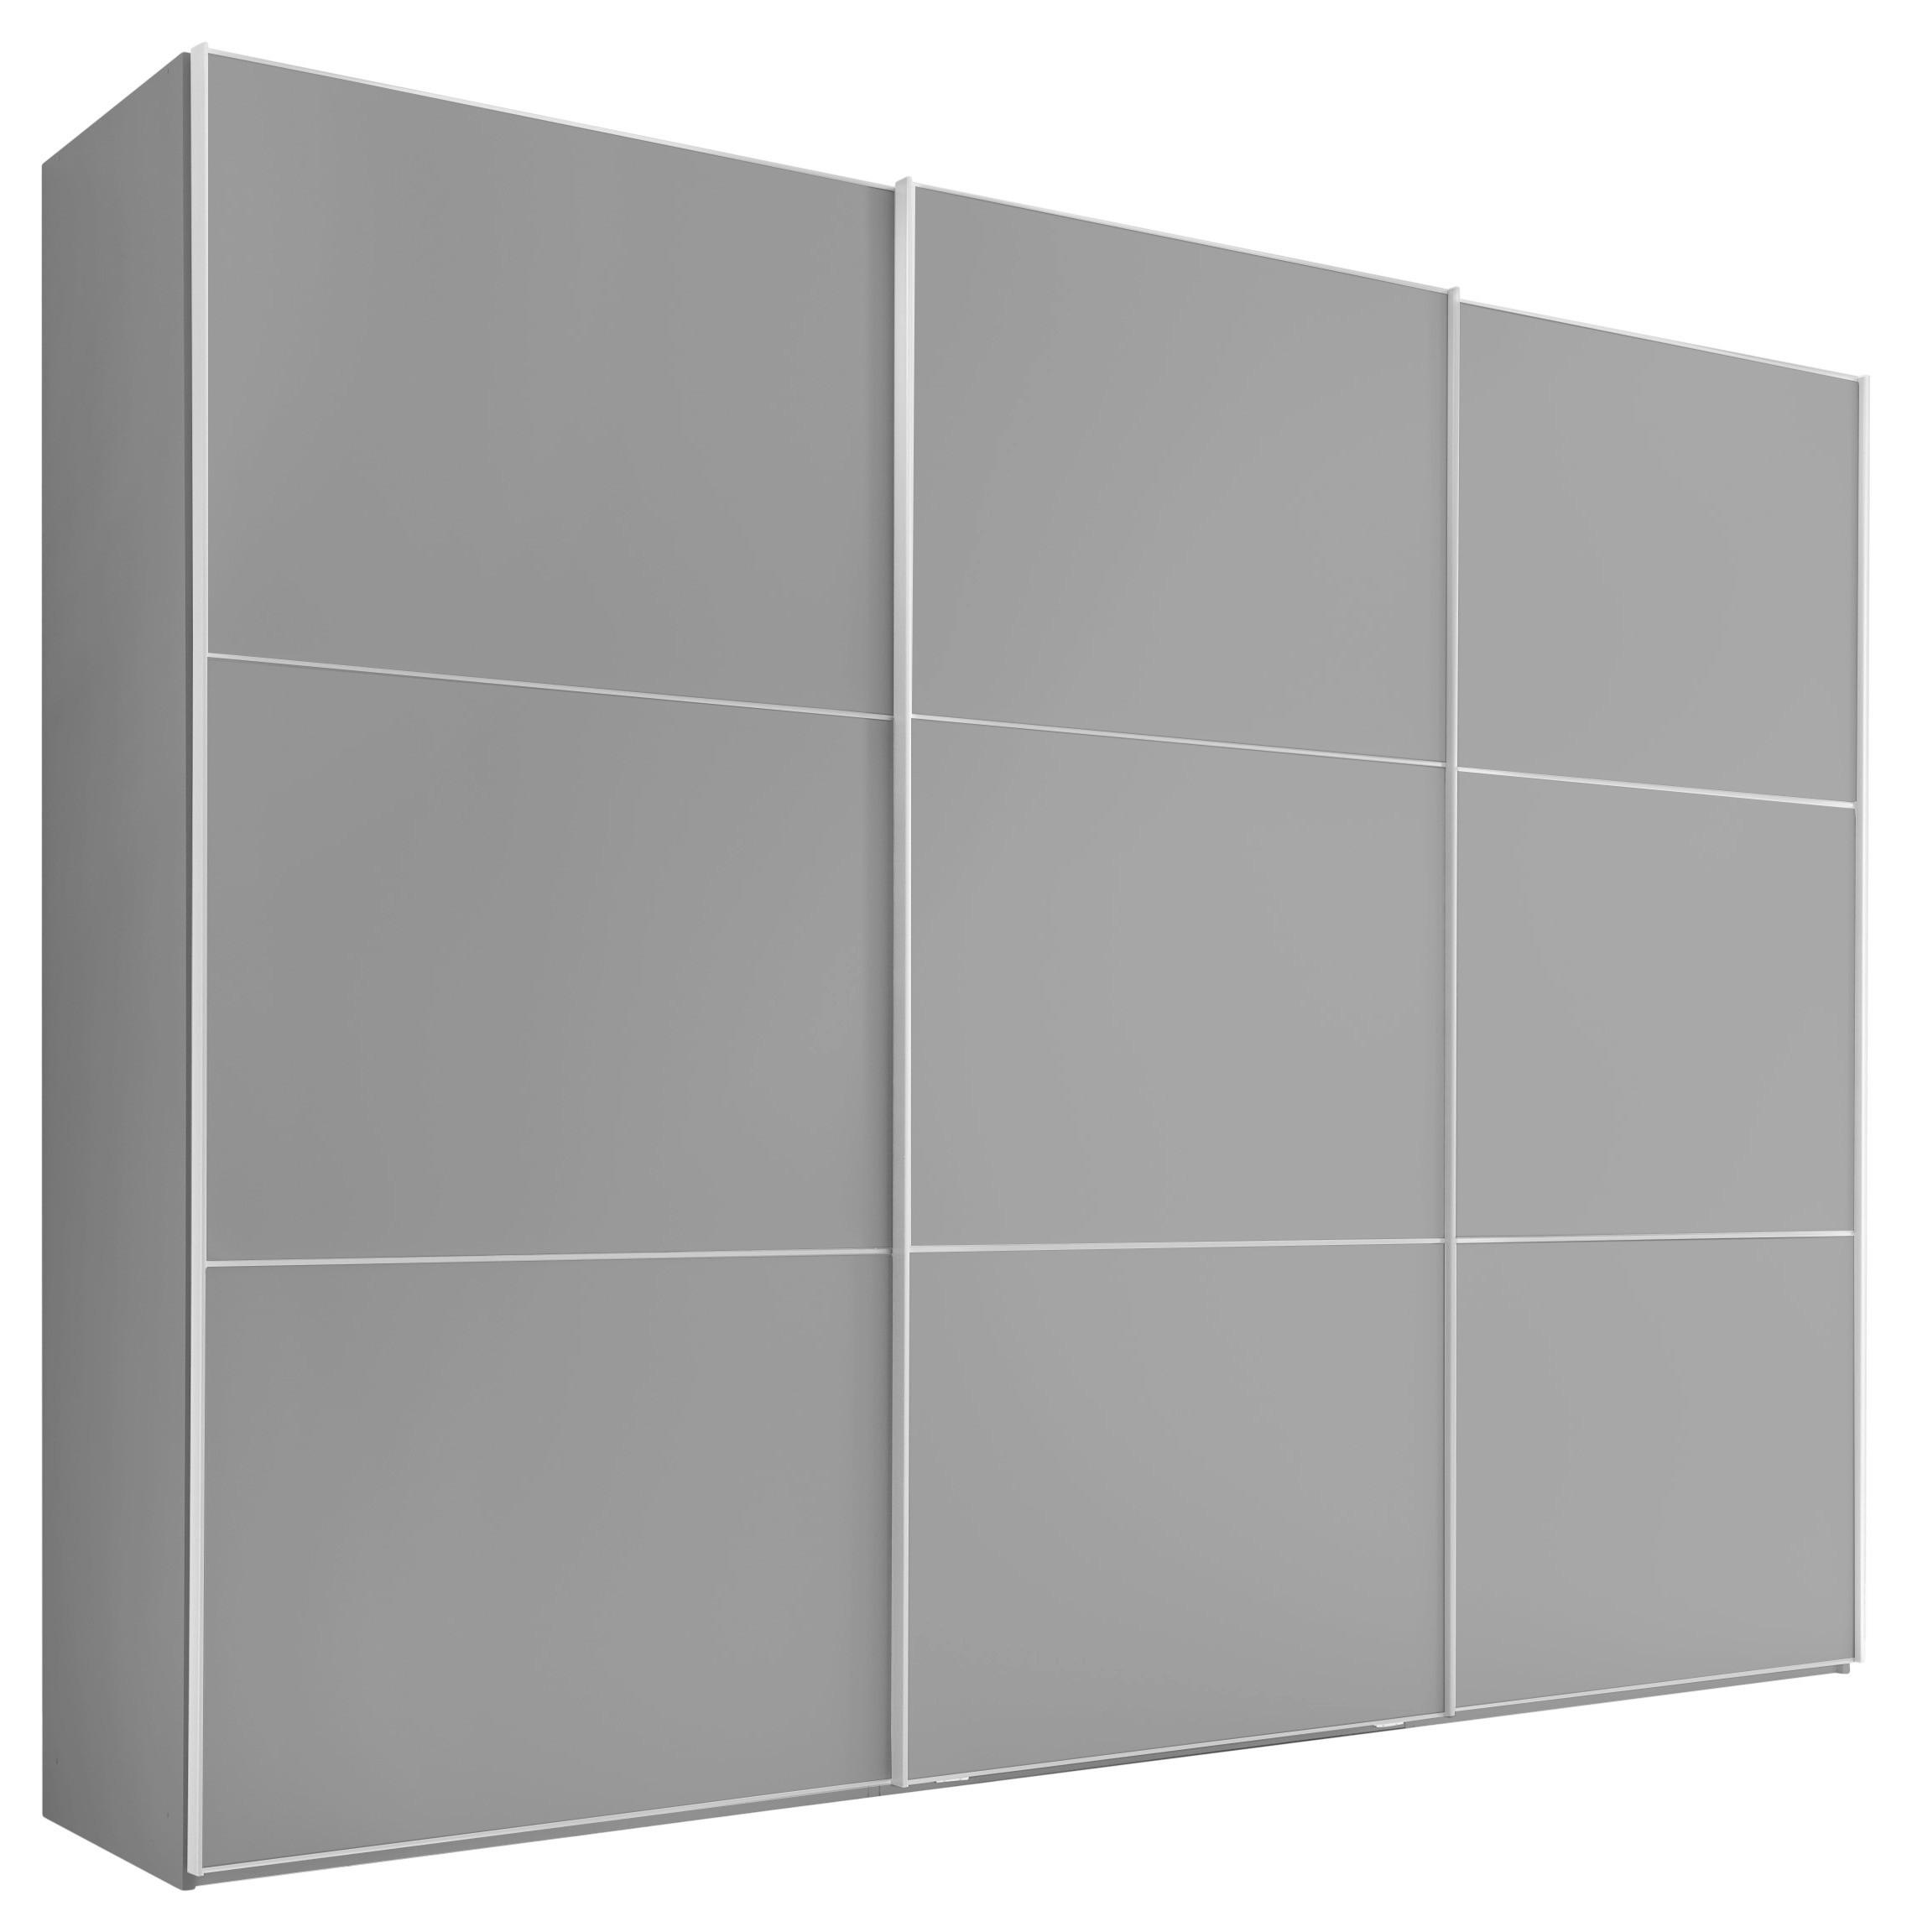 Skříň Includo Saphir 249 Cm - šedá/barvy hliníku, Moderní (249/222/68cm)